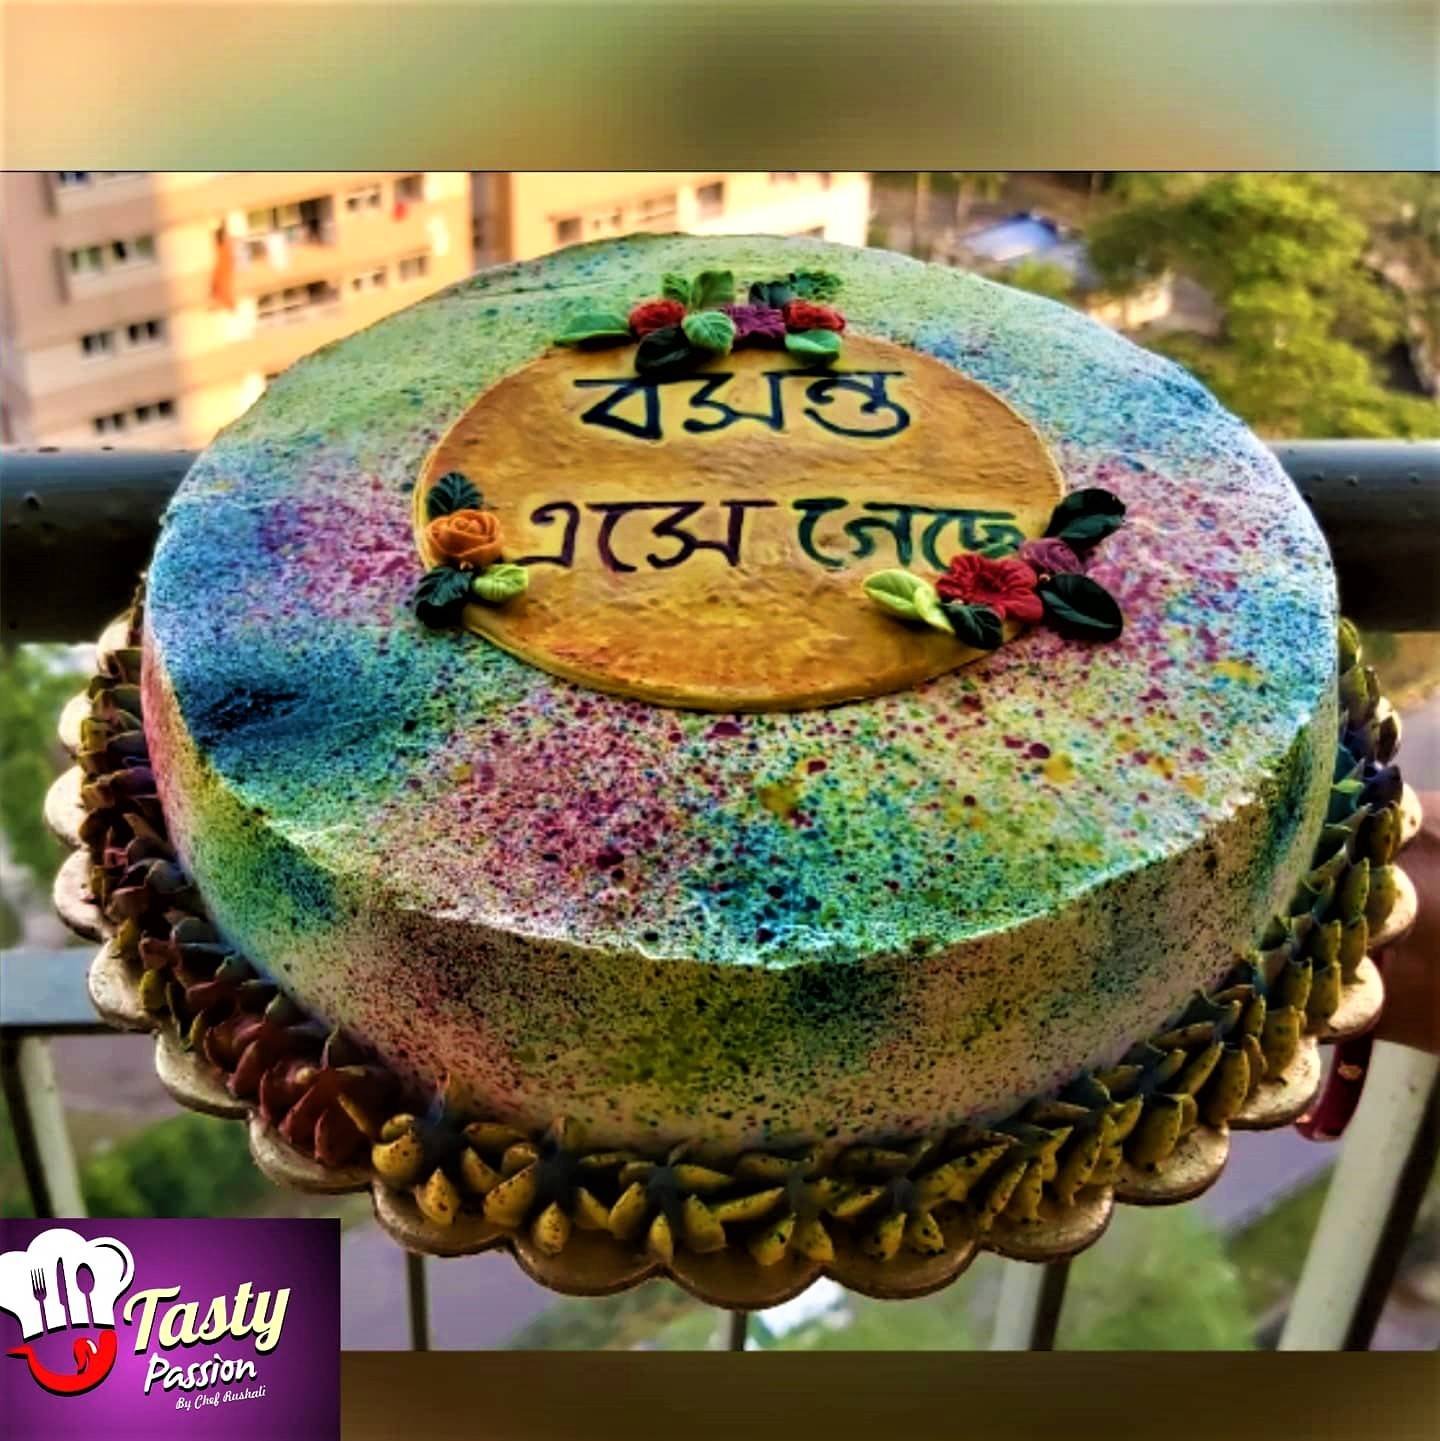 Colourful Holi Cake | Holi colors, Colorful cakes, Holi